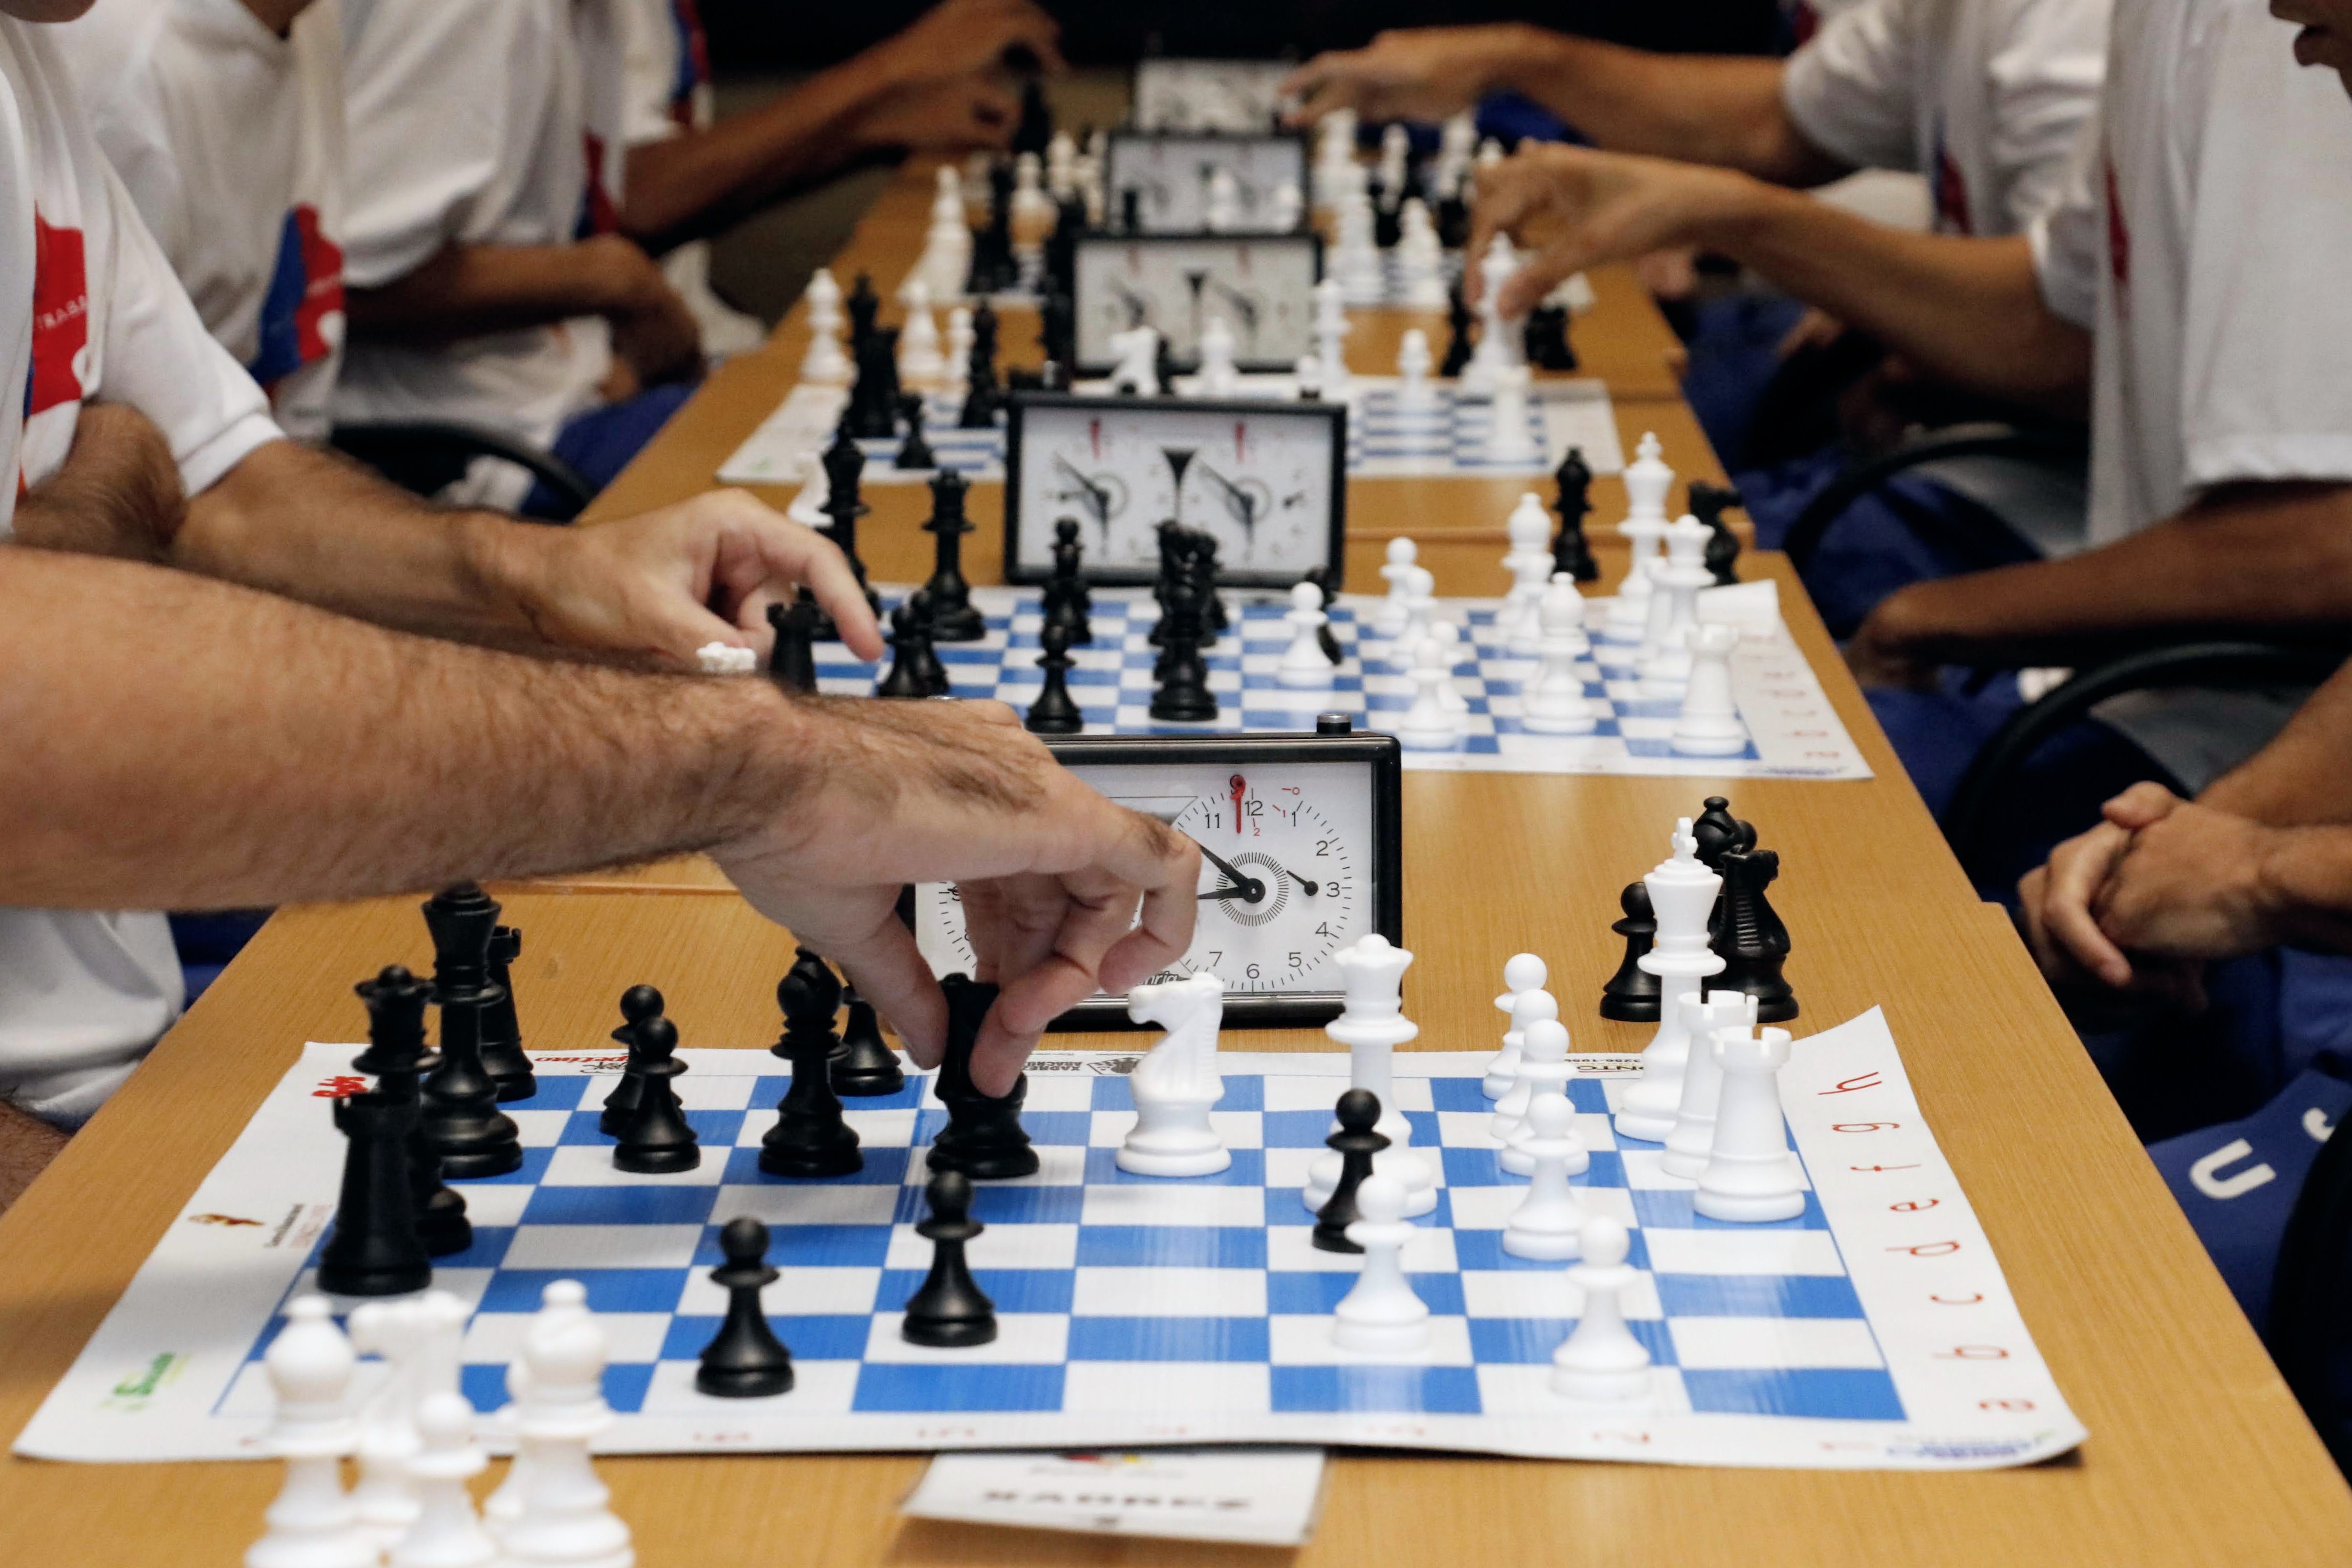 Juiz de Fora sedia campeonato mundial de xadrez escolar - Portal